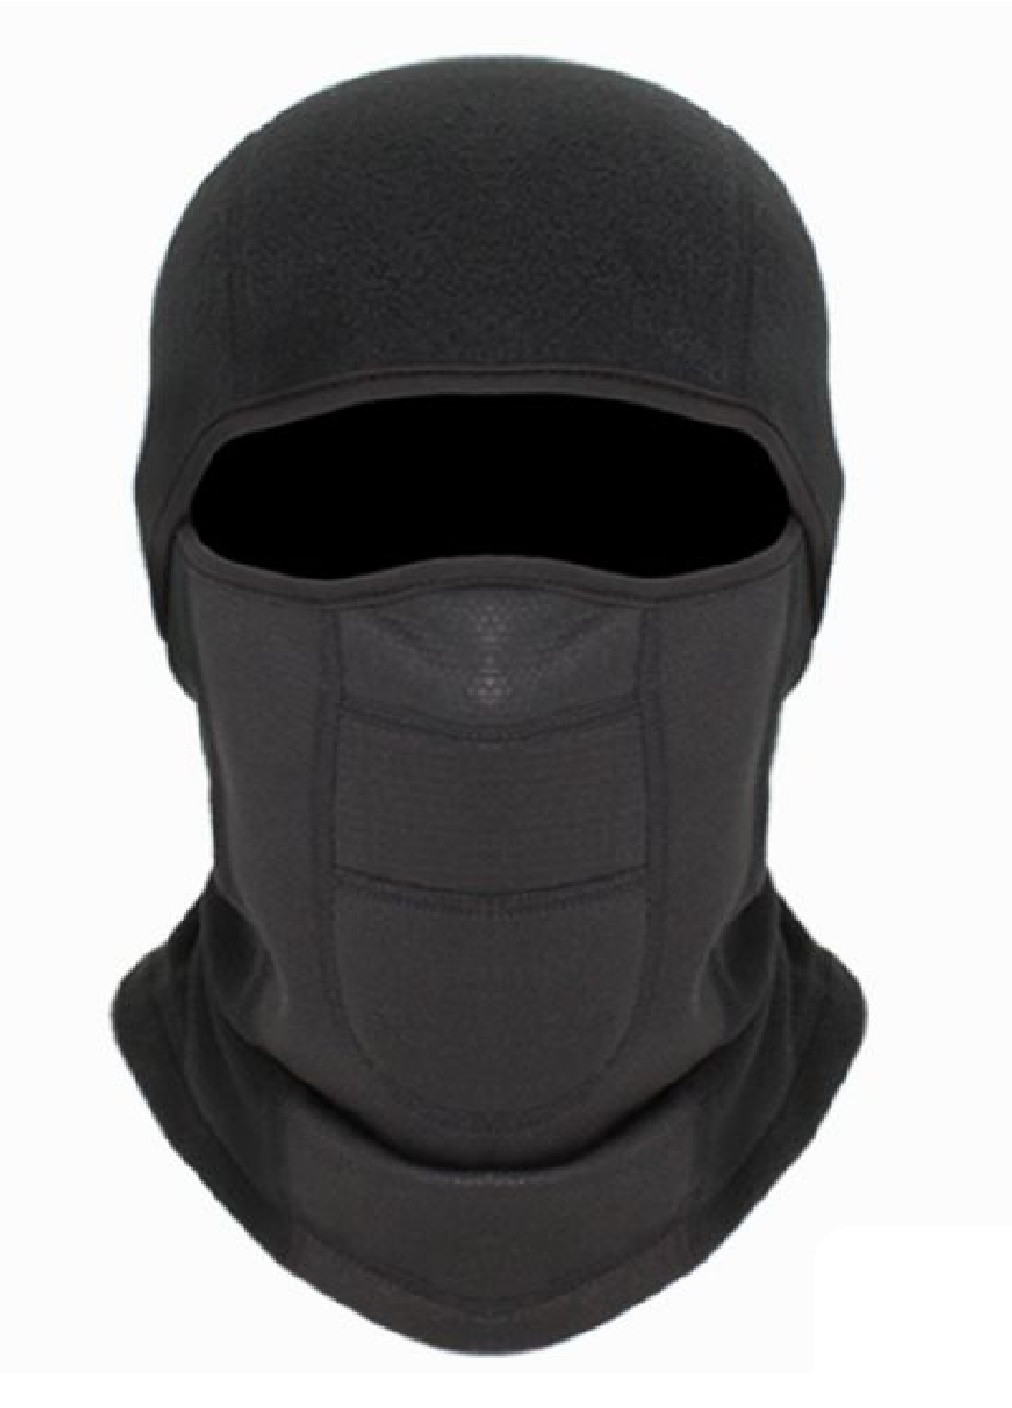 Francesco Marconi термо маска флисовая балаклава зимний бафф шарф подшлемник лыжная шапка (472815-prob) черная однотонный черный кэжуал флис производство - Китай